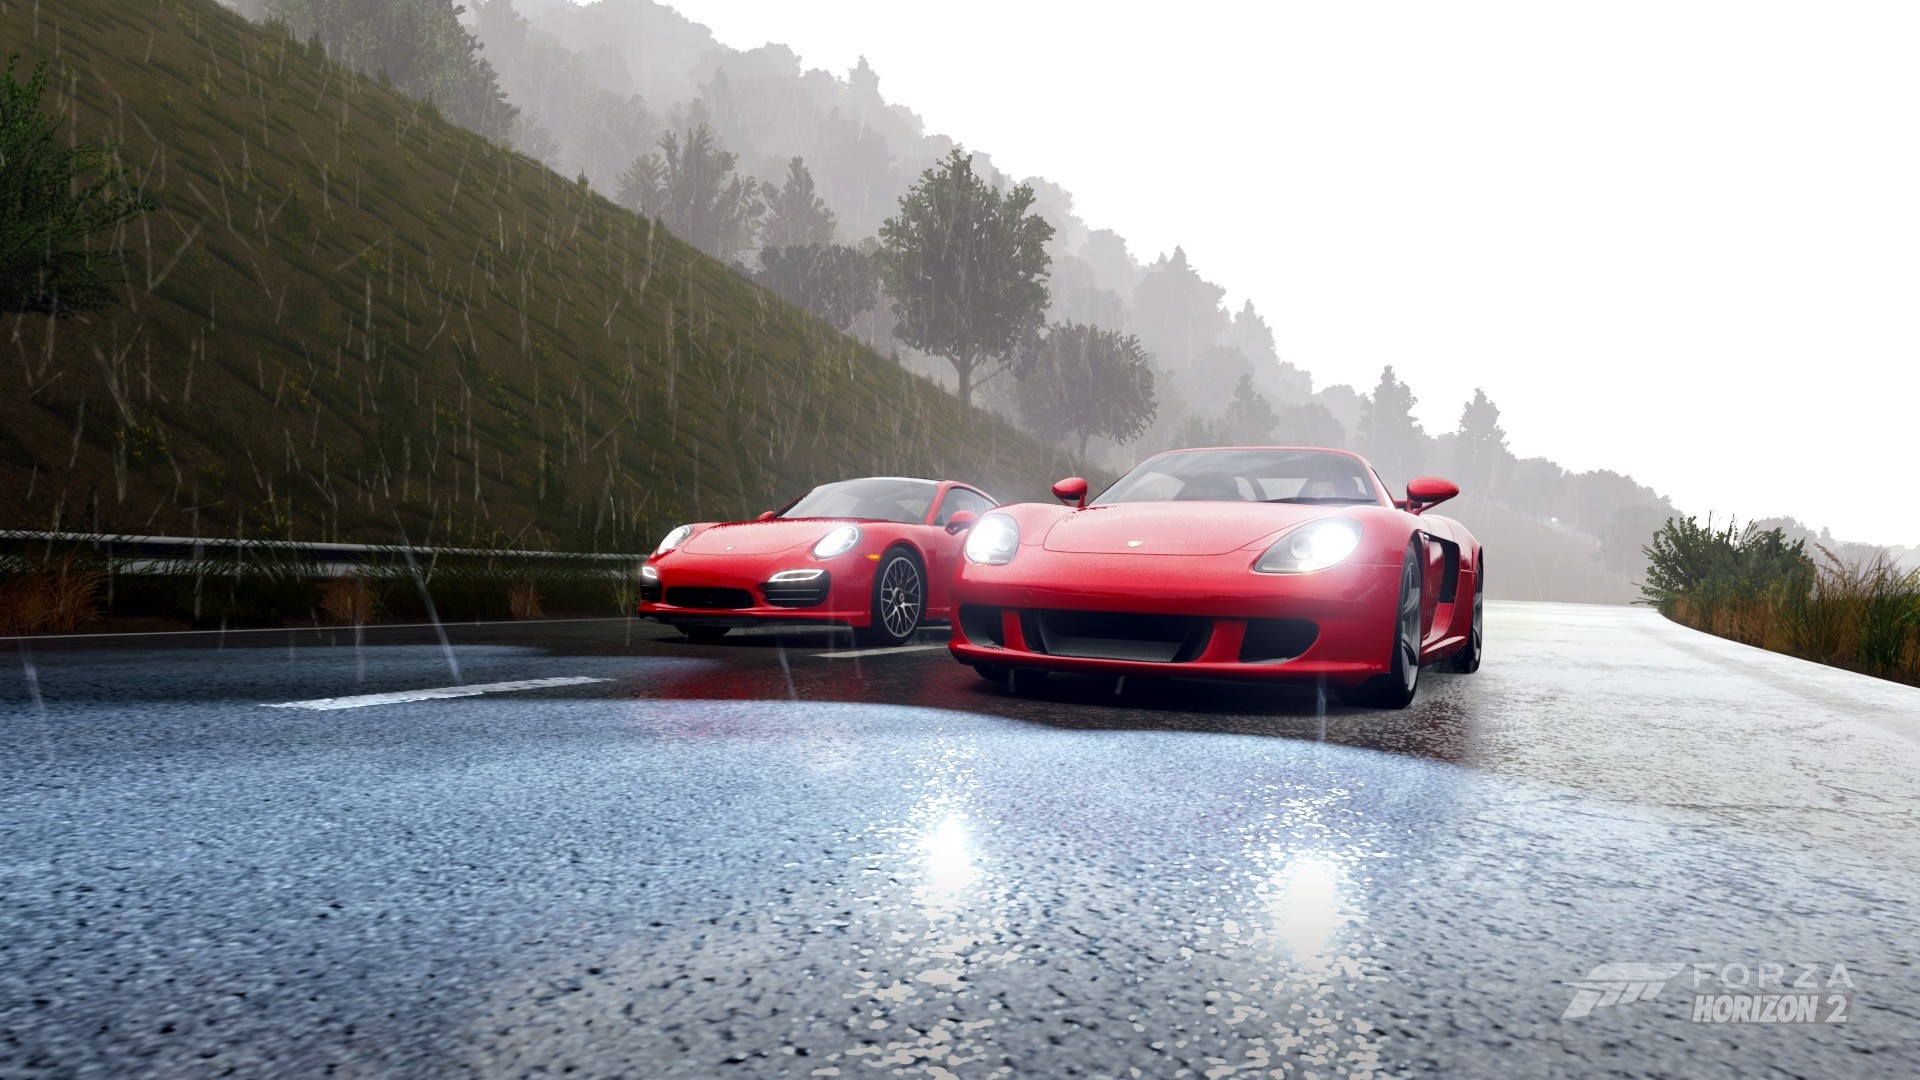 Forza Horizon 2 Porsche Carrera GT Video Games 1920x1080